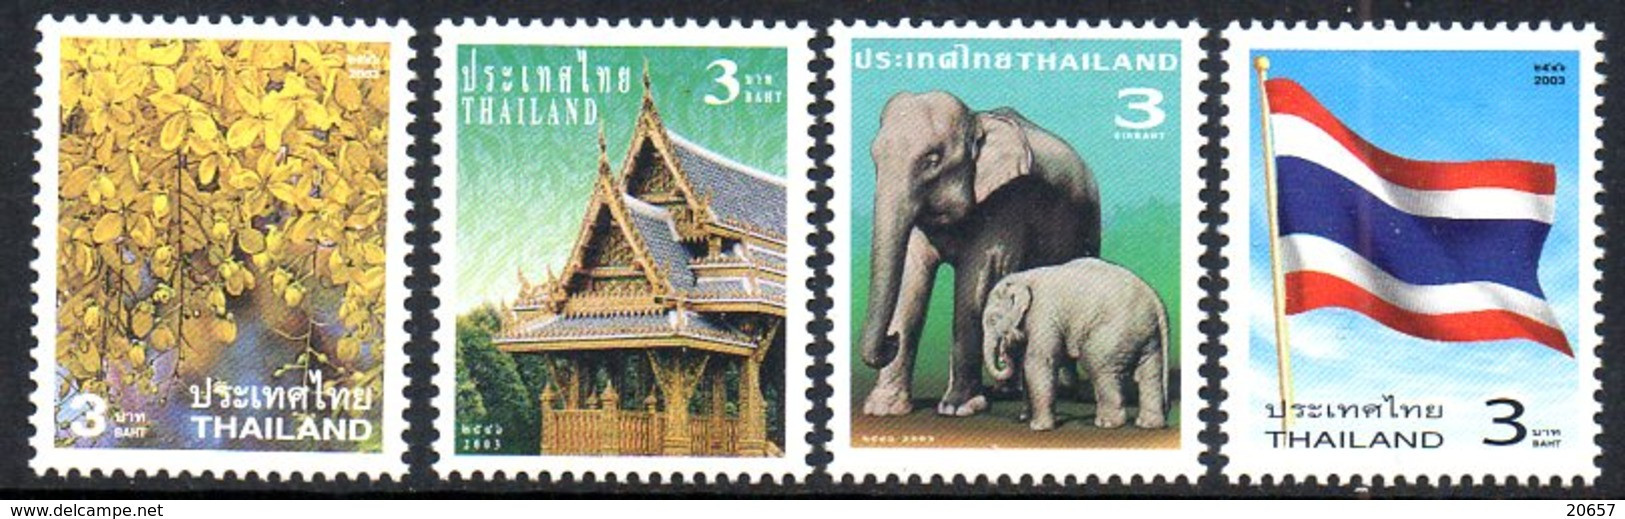 Thailand Thailande 2083/86 Usage Courant, éléphant, Drapeau, Flore, Pagode - Tailandia